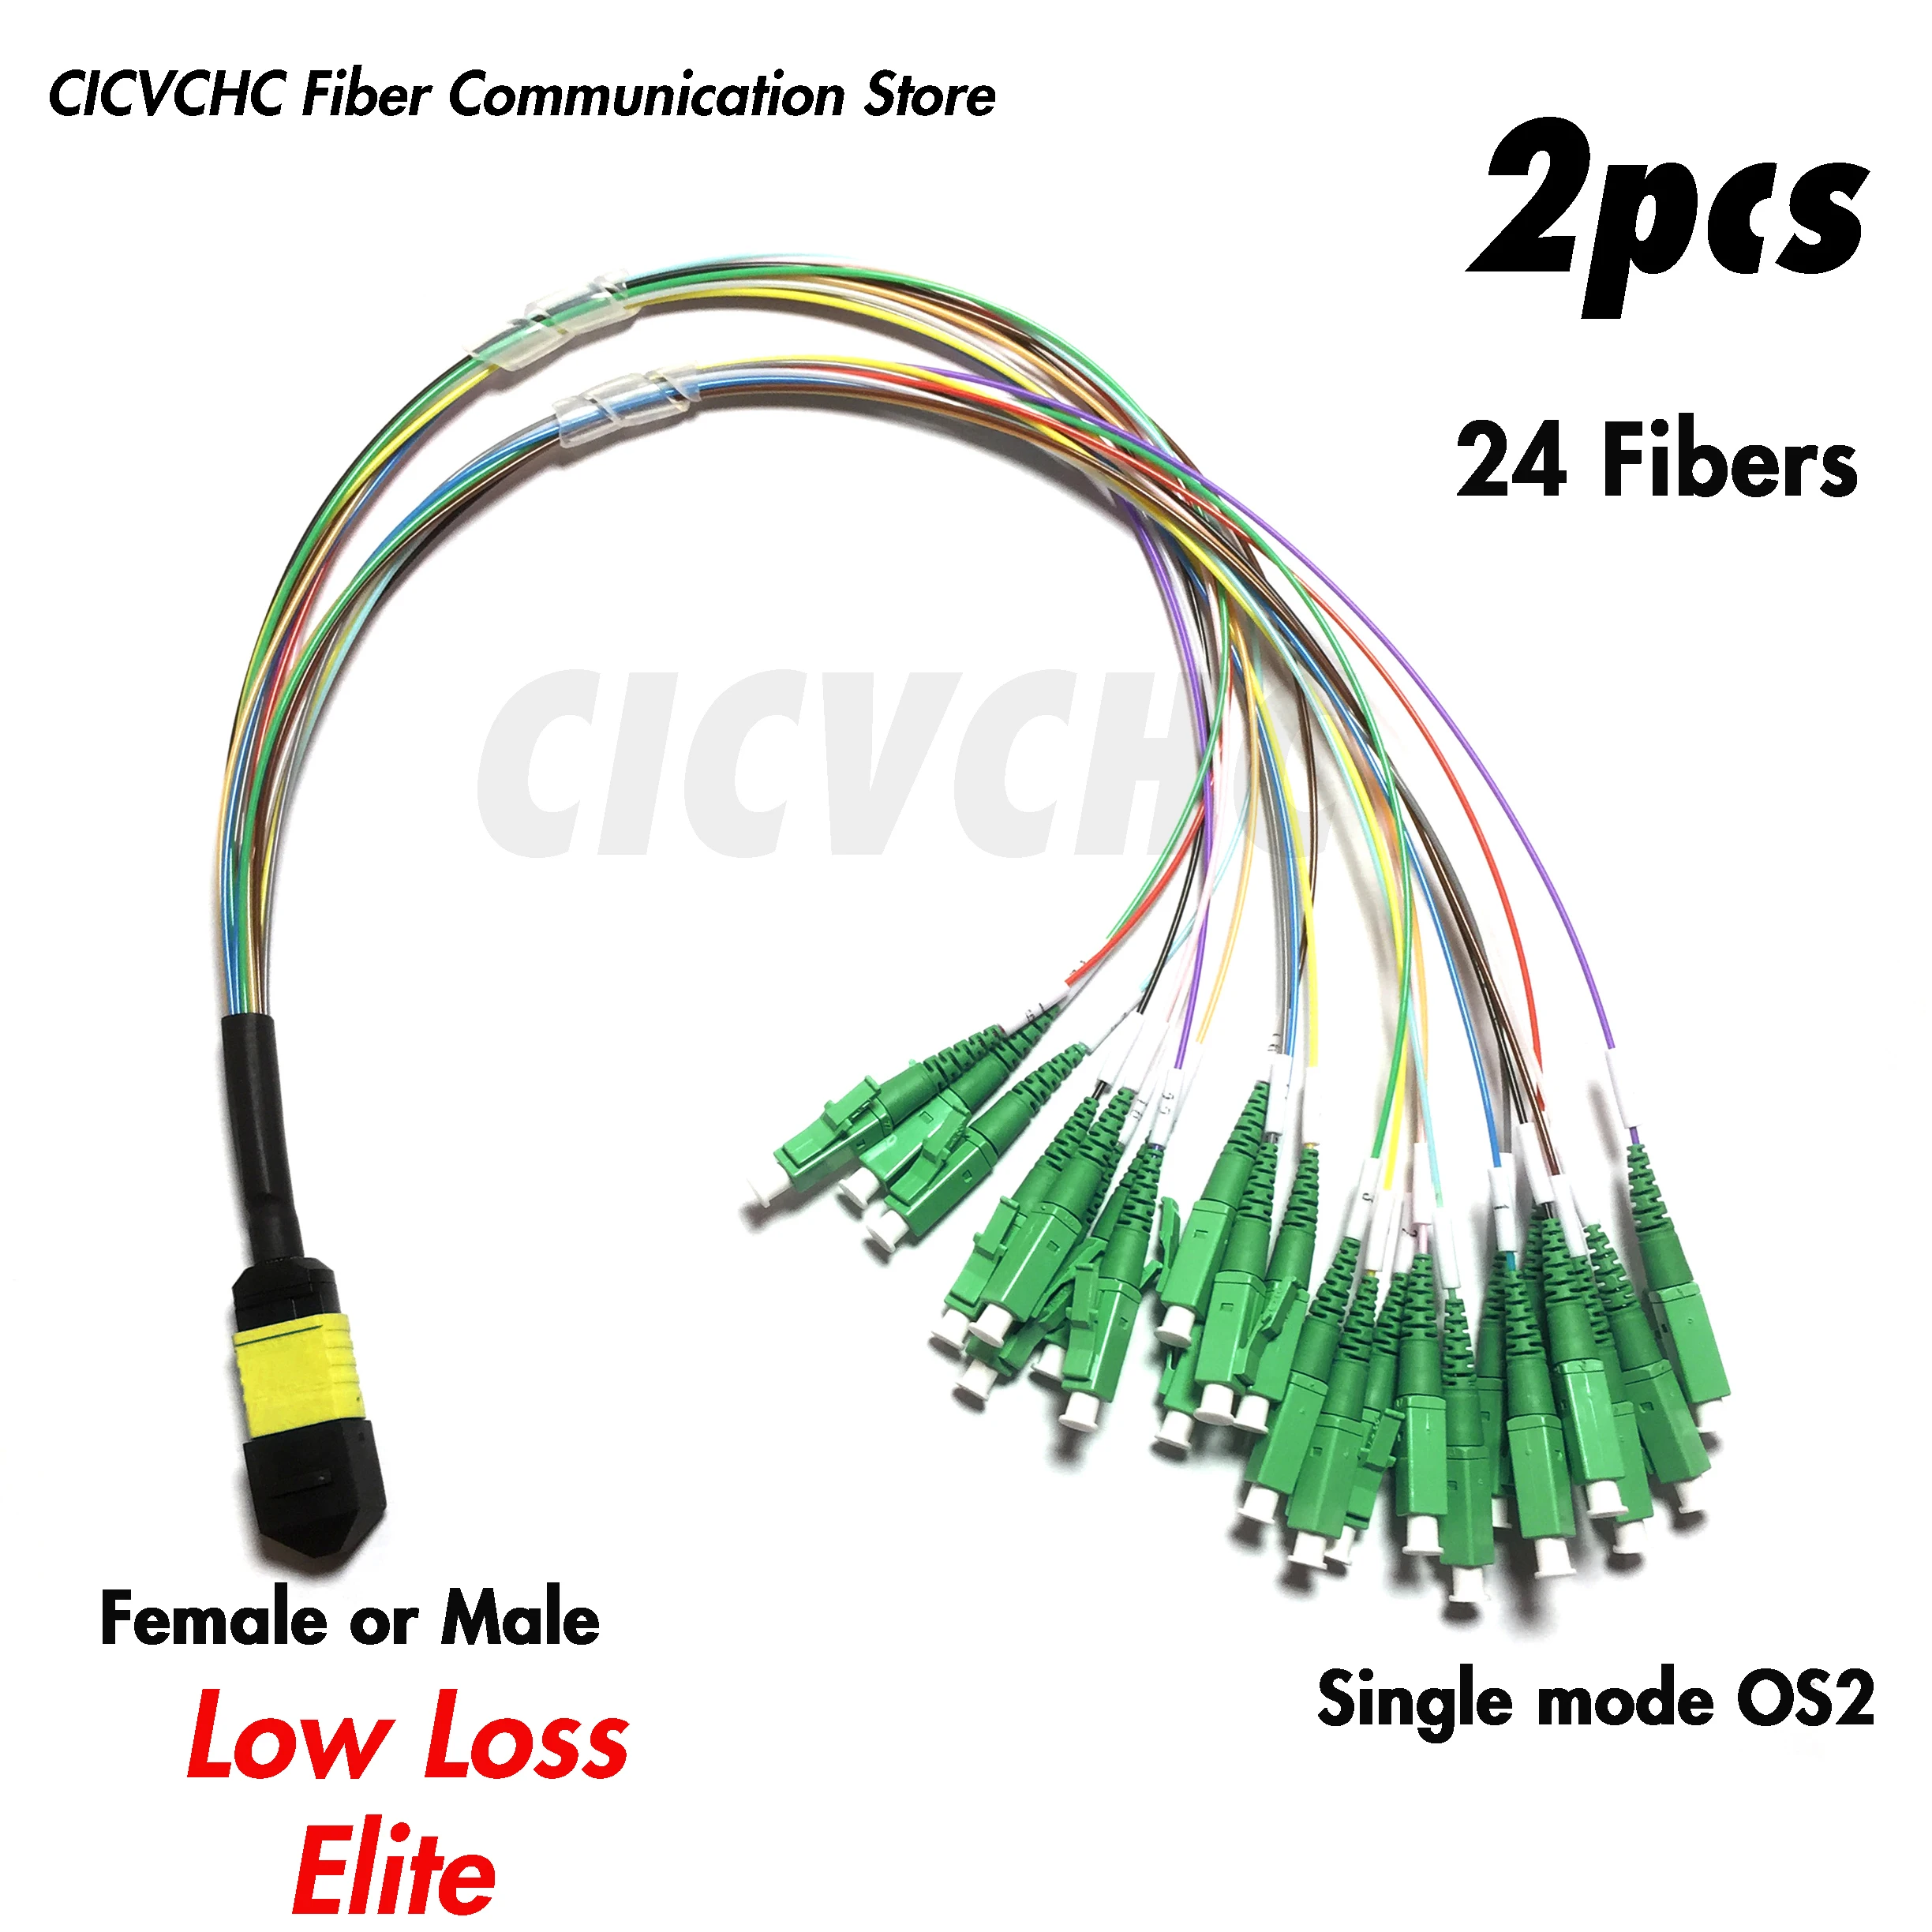 2pcs 24 Fibers MPO/APC - LC/APC-Harness cable-SM G657A2-0.35m-Elite/Low loss- Male/Female-0.9mm colored tube 2pcs 12fibers mpo apc lc apc harness cable sm g657a2 0 35m 0 9mm colored tube male female